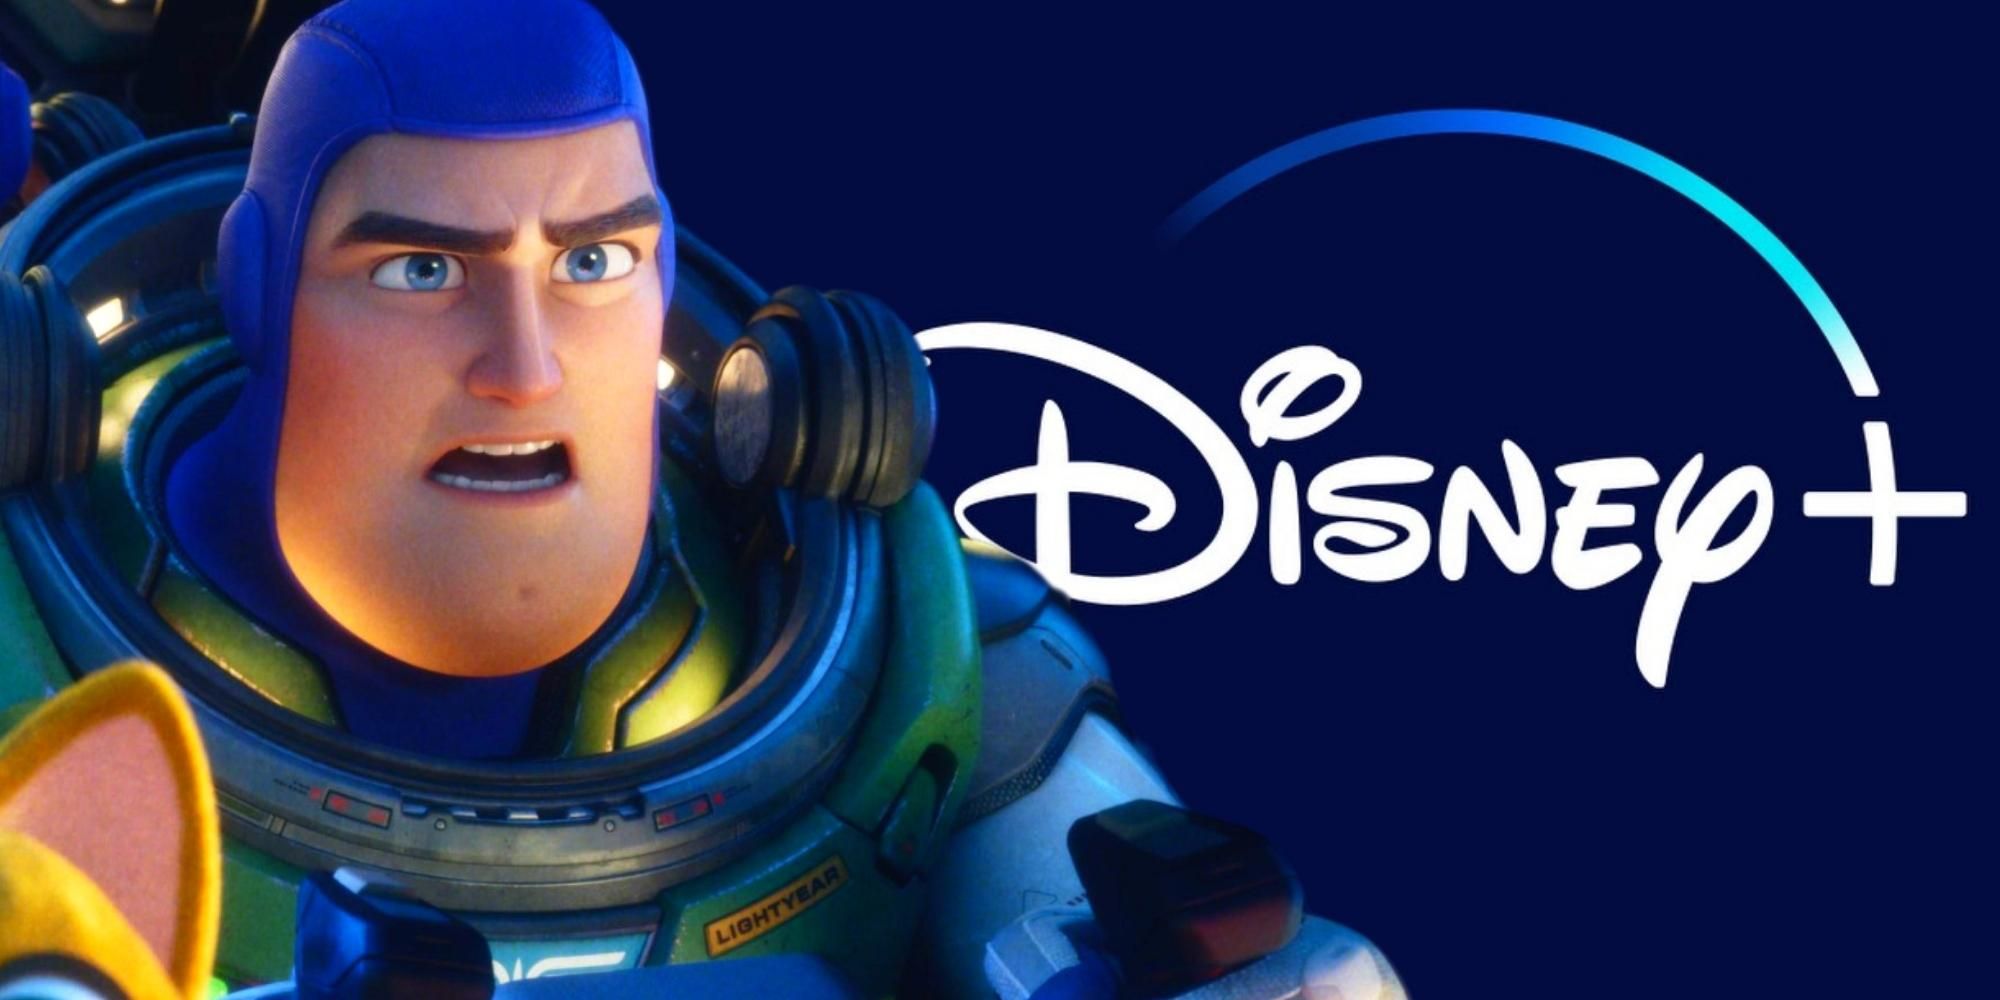 Buzz Lightyear next to the Disney+ logo